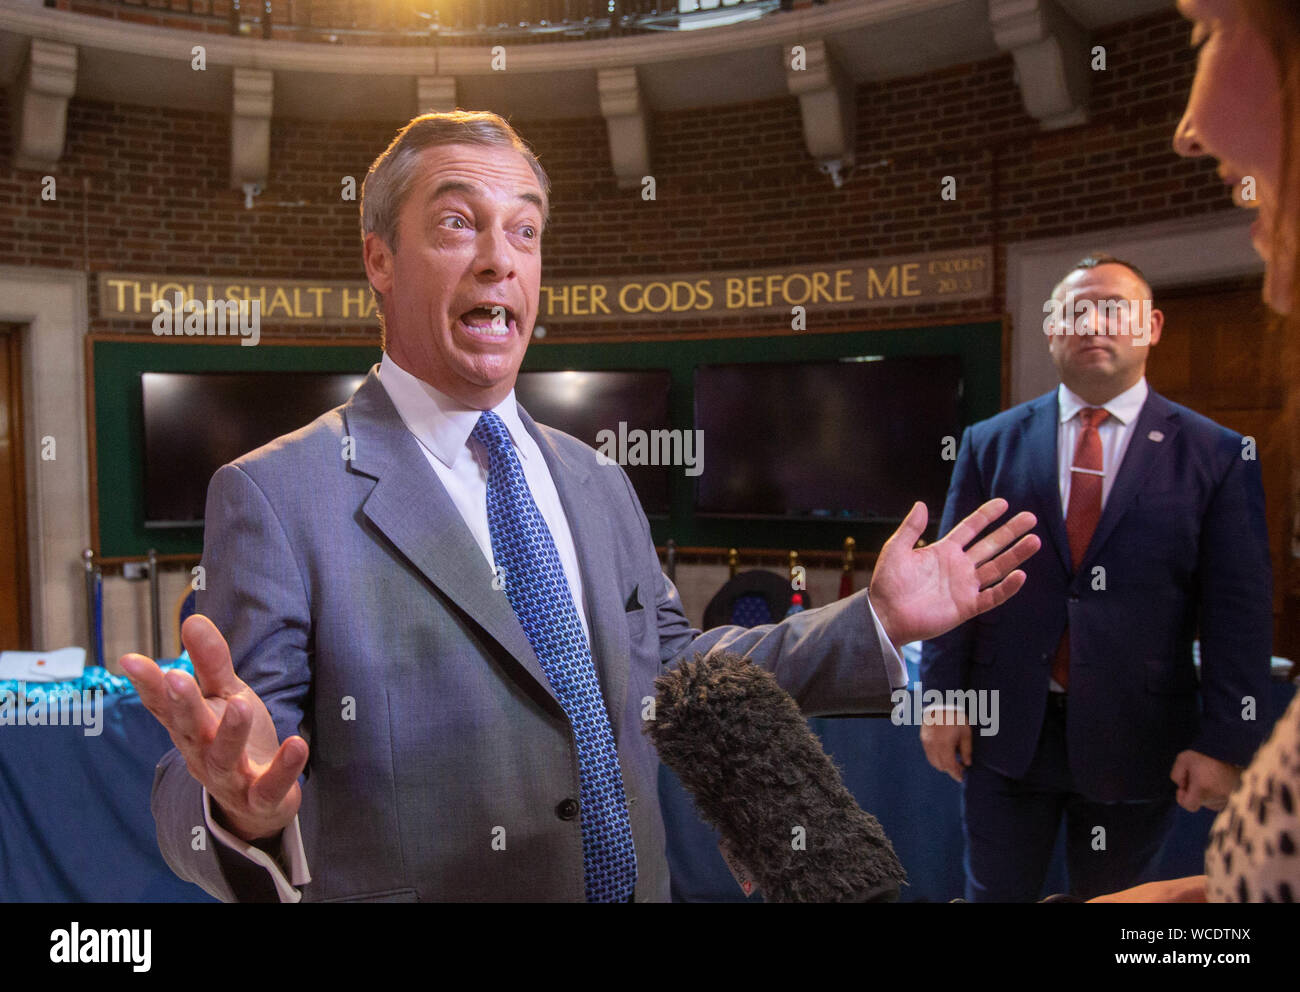 Brexit Chef de parti, Nigel Farage, donne une interview avec l'un des dix commandements 'Tu n'auras pas d'autres dieux devant moi" sur le mur en t Banque D'Images